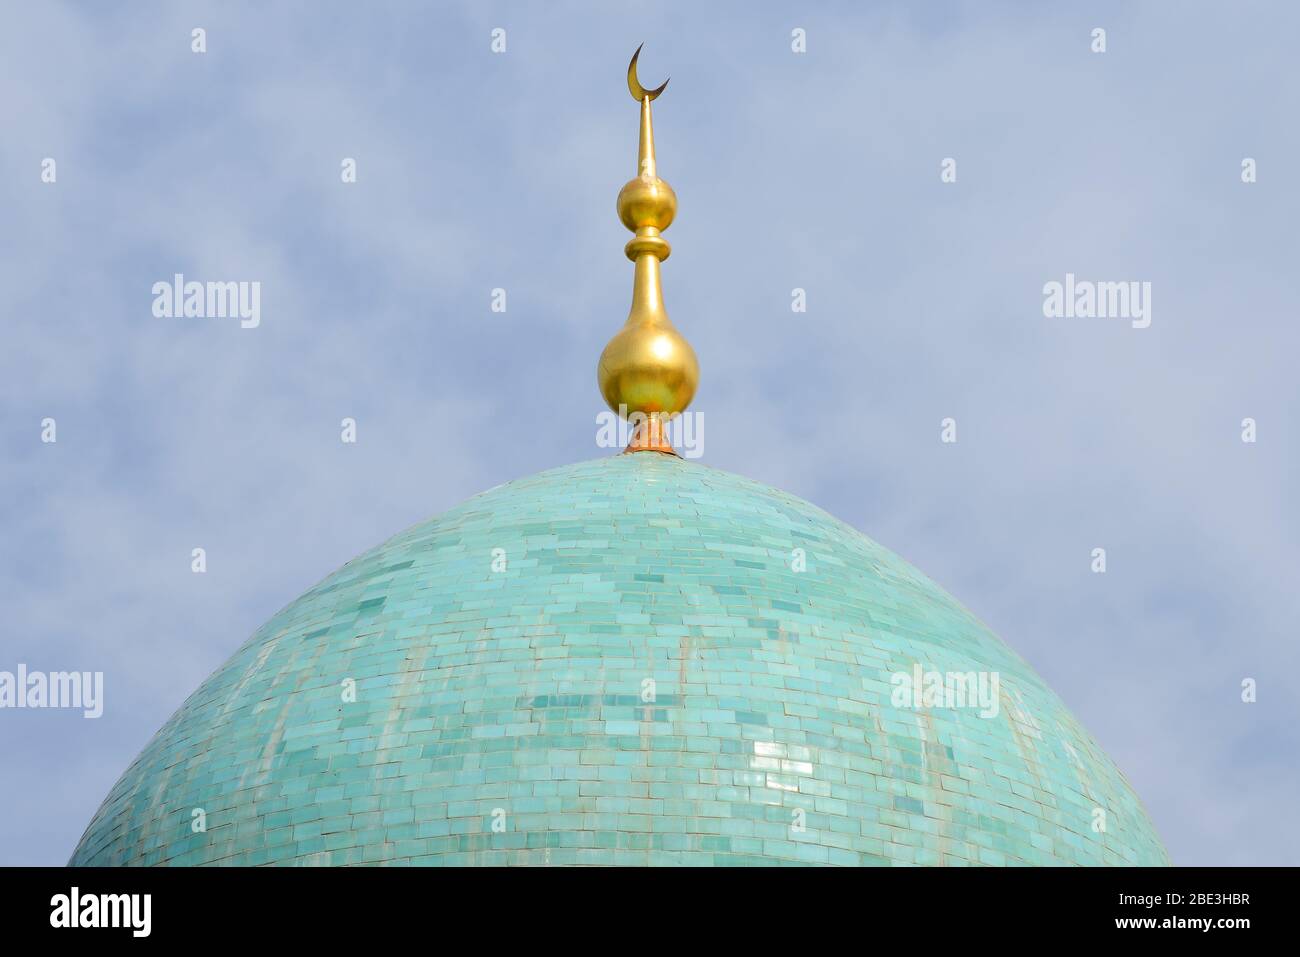 Vue rapprochée d'un dôme turquoise et d'ornement doré de l'étoile et du croissant de lune. Coupole bleue. Représentation os religion islamique à Tachkent, Ouzbékistan Banque D'Images